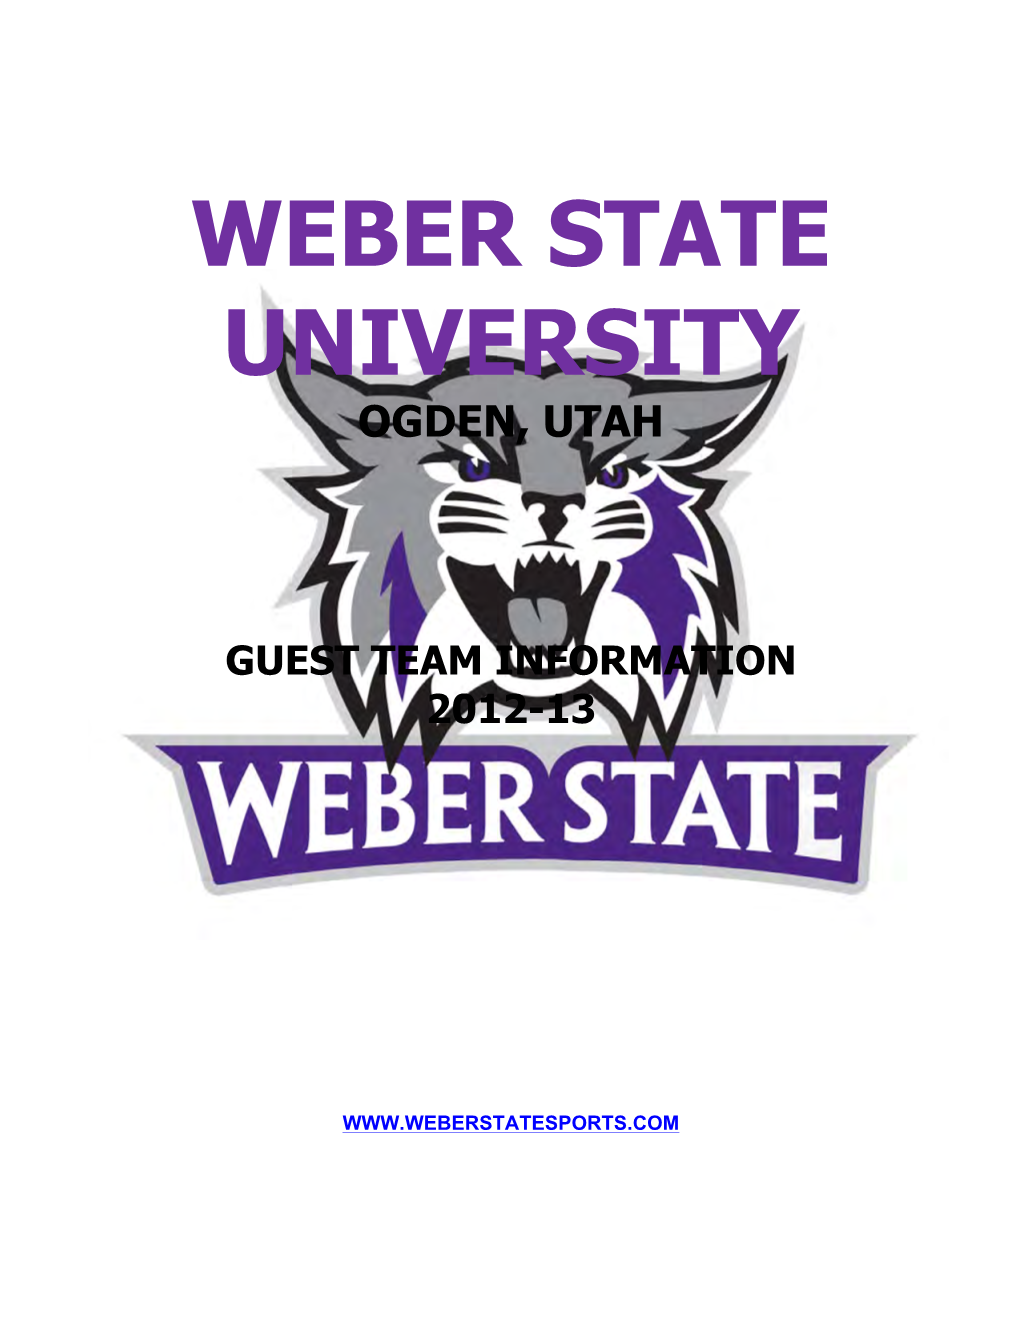 Weber State University Ogden, Utah